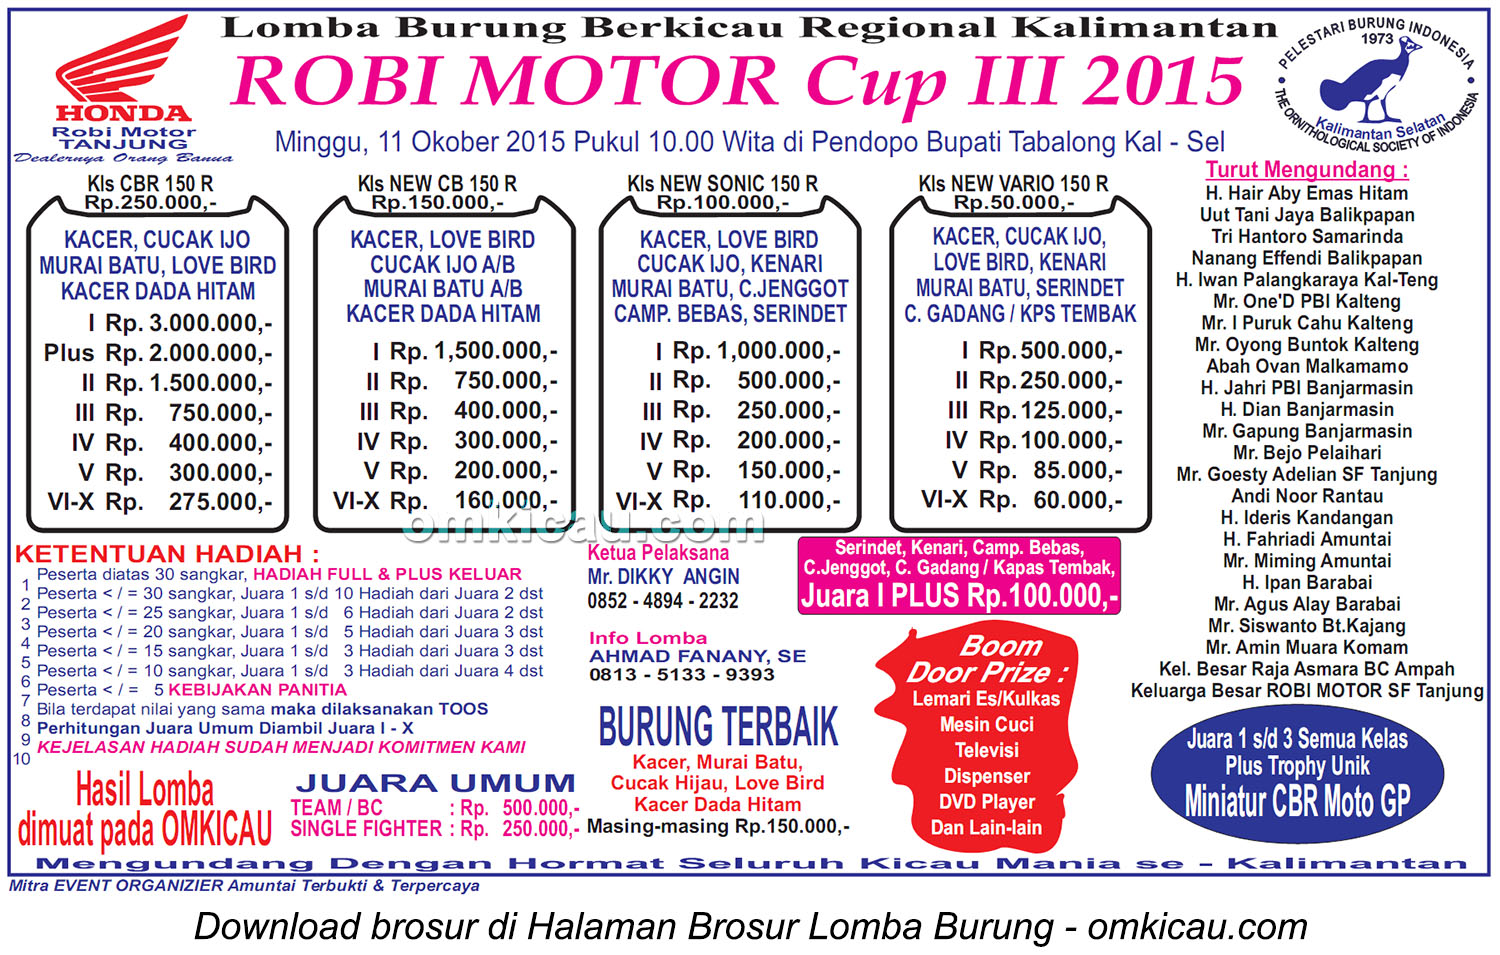 Brosur Lomba Burung Berkicau Robi Motor Cup III, Tabalong, 11 Oktober 2015